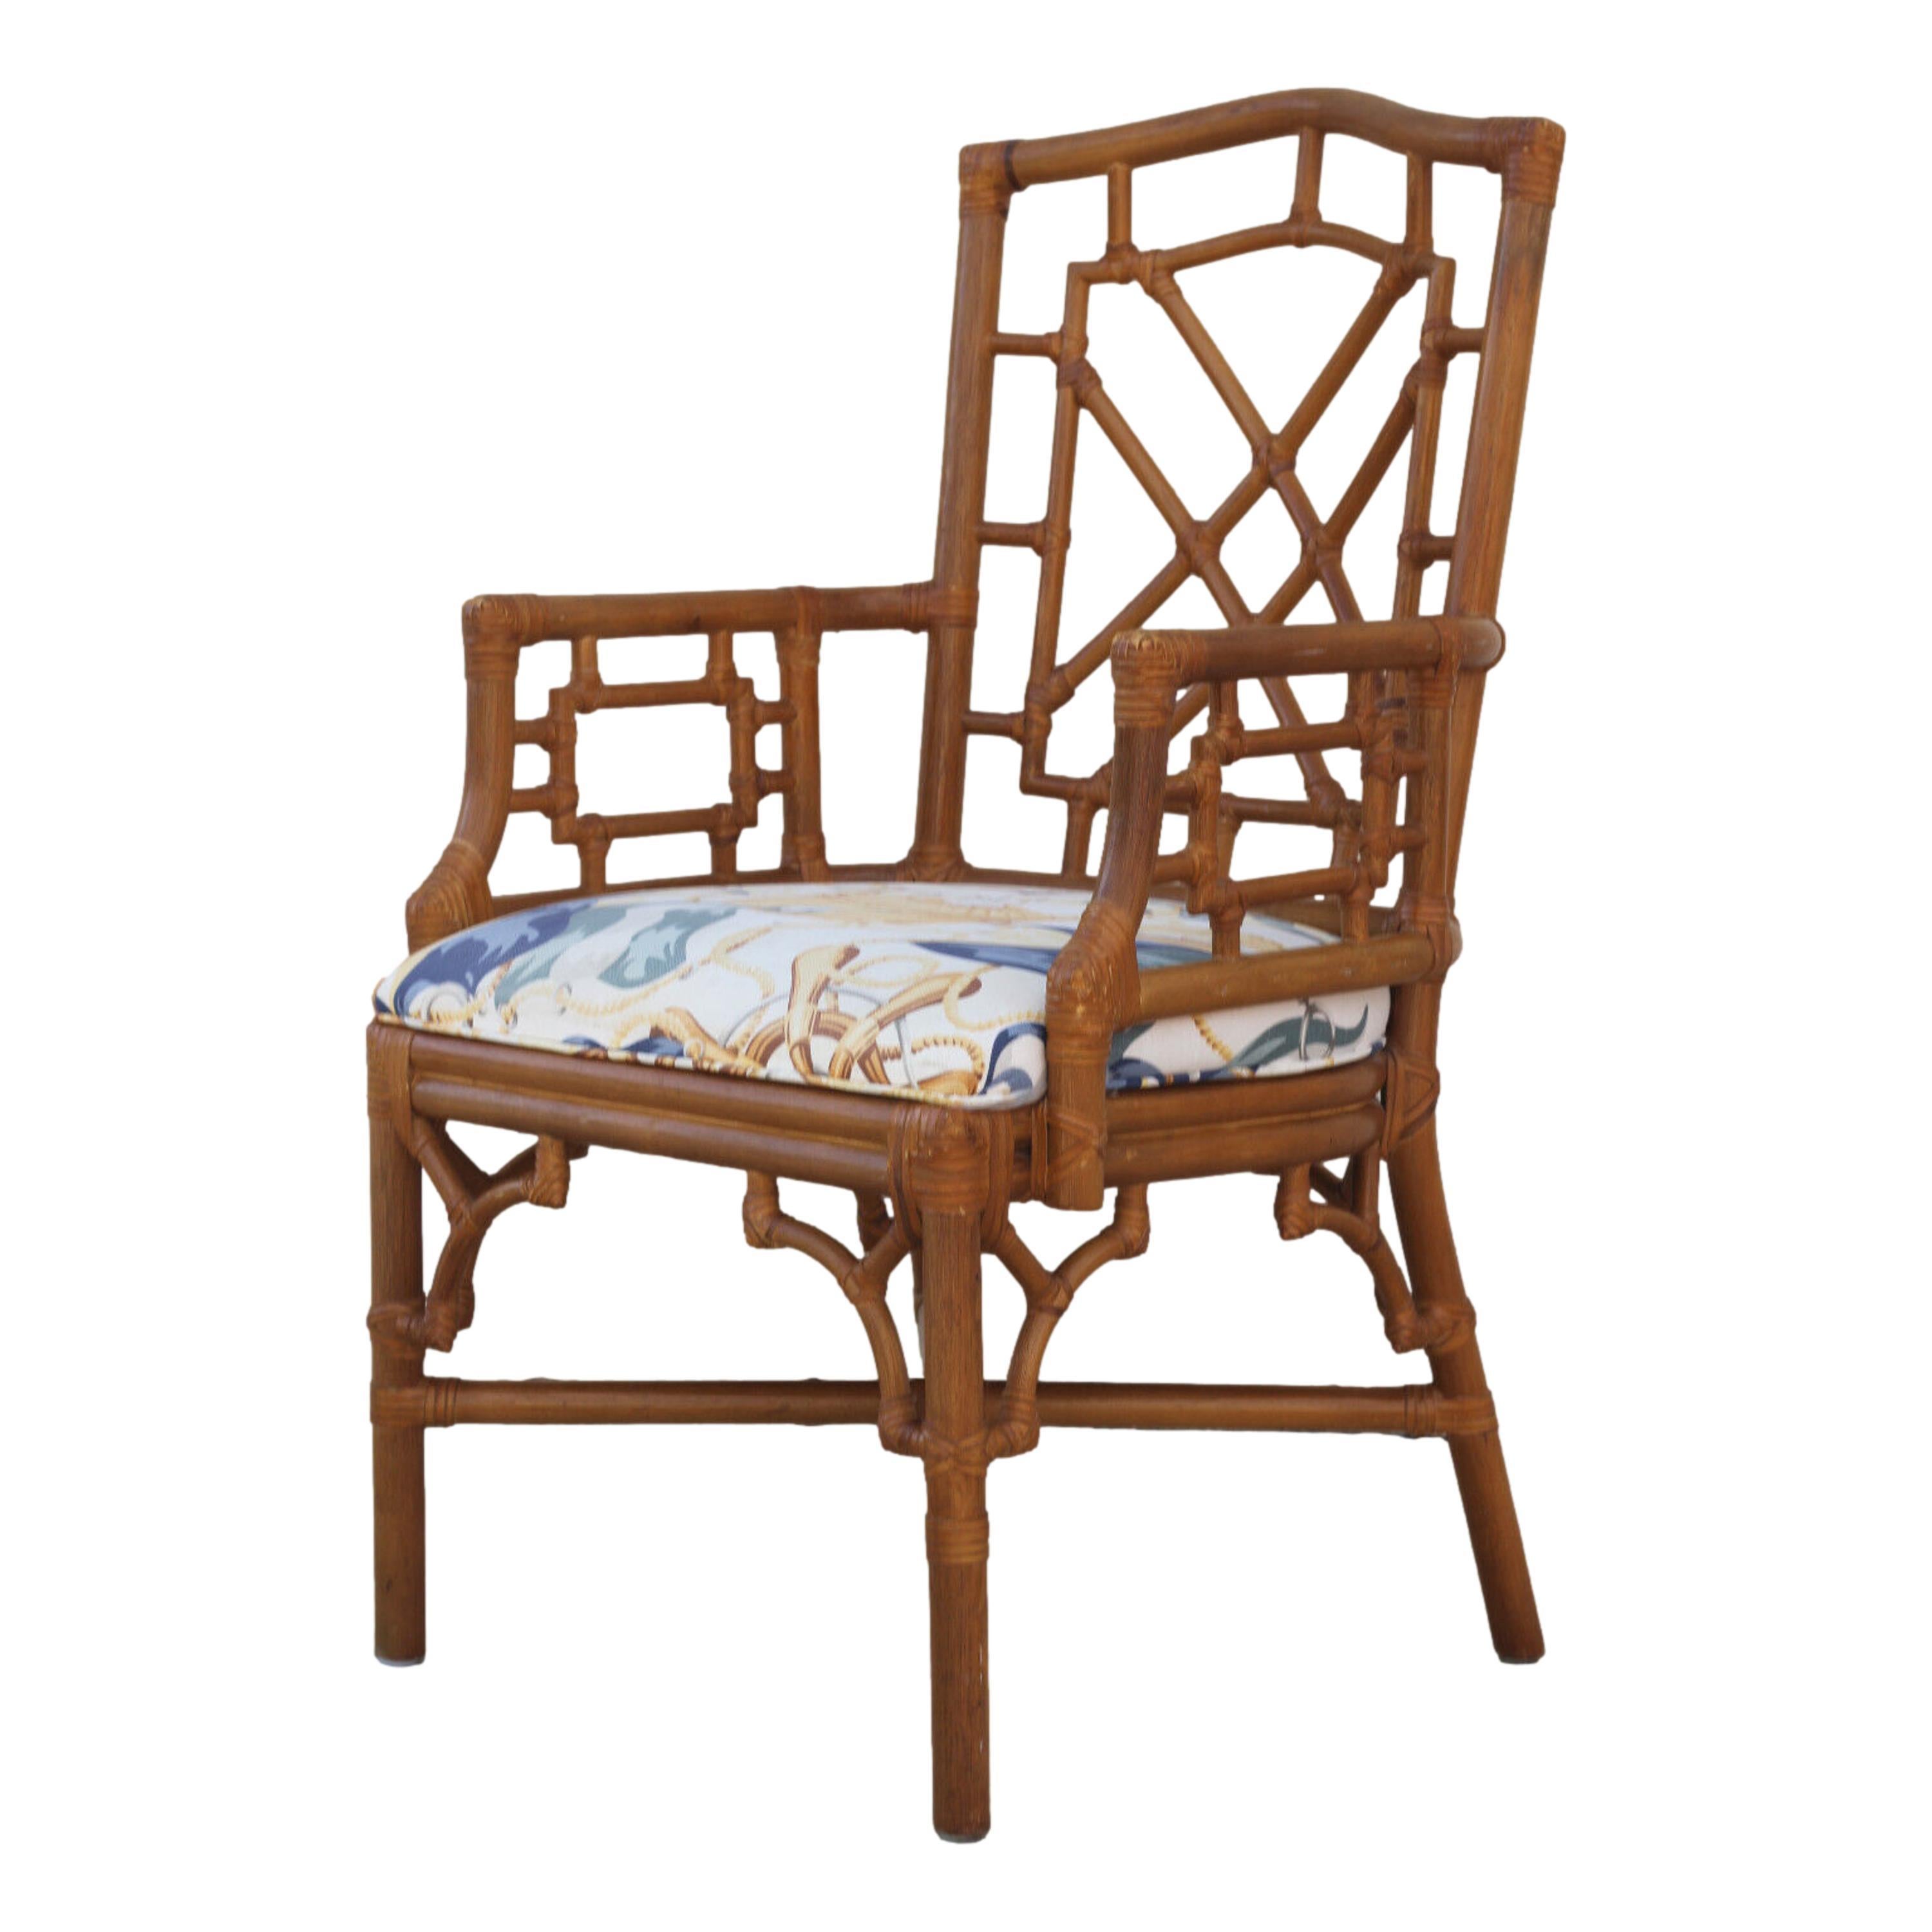 Un bel ensemble de huit fauteuils de salle à manger en rotin vintage de Lexington. Les chaises chinoises de style Chippendale sont dotées d'une structure en rotin et d'un frettage en rotin sur le dossier, les accoudoirs et les coins frettés sous les